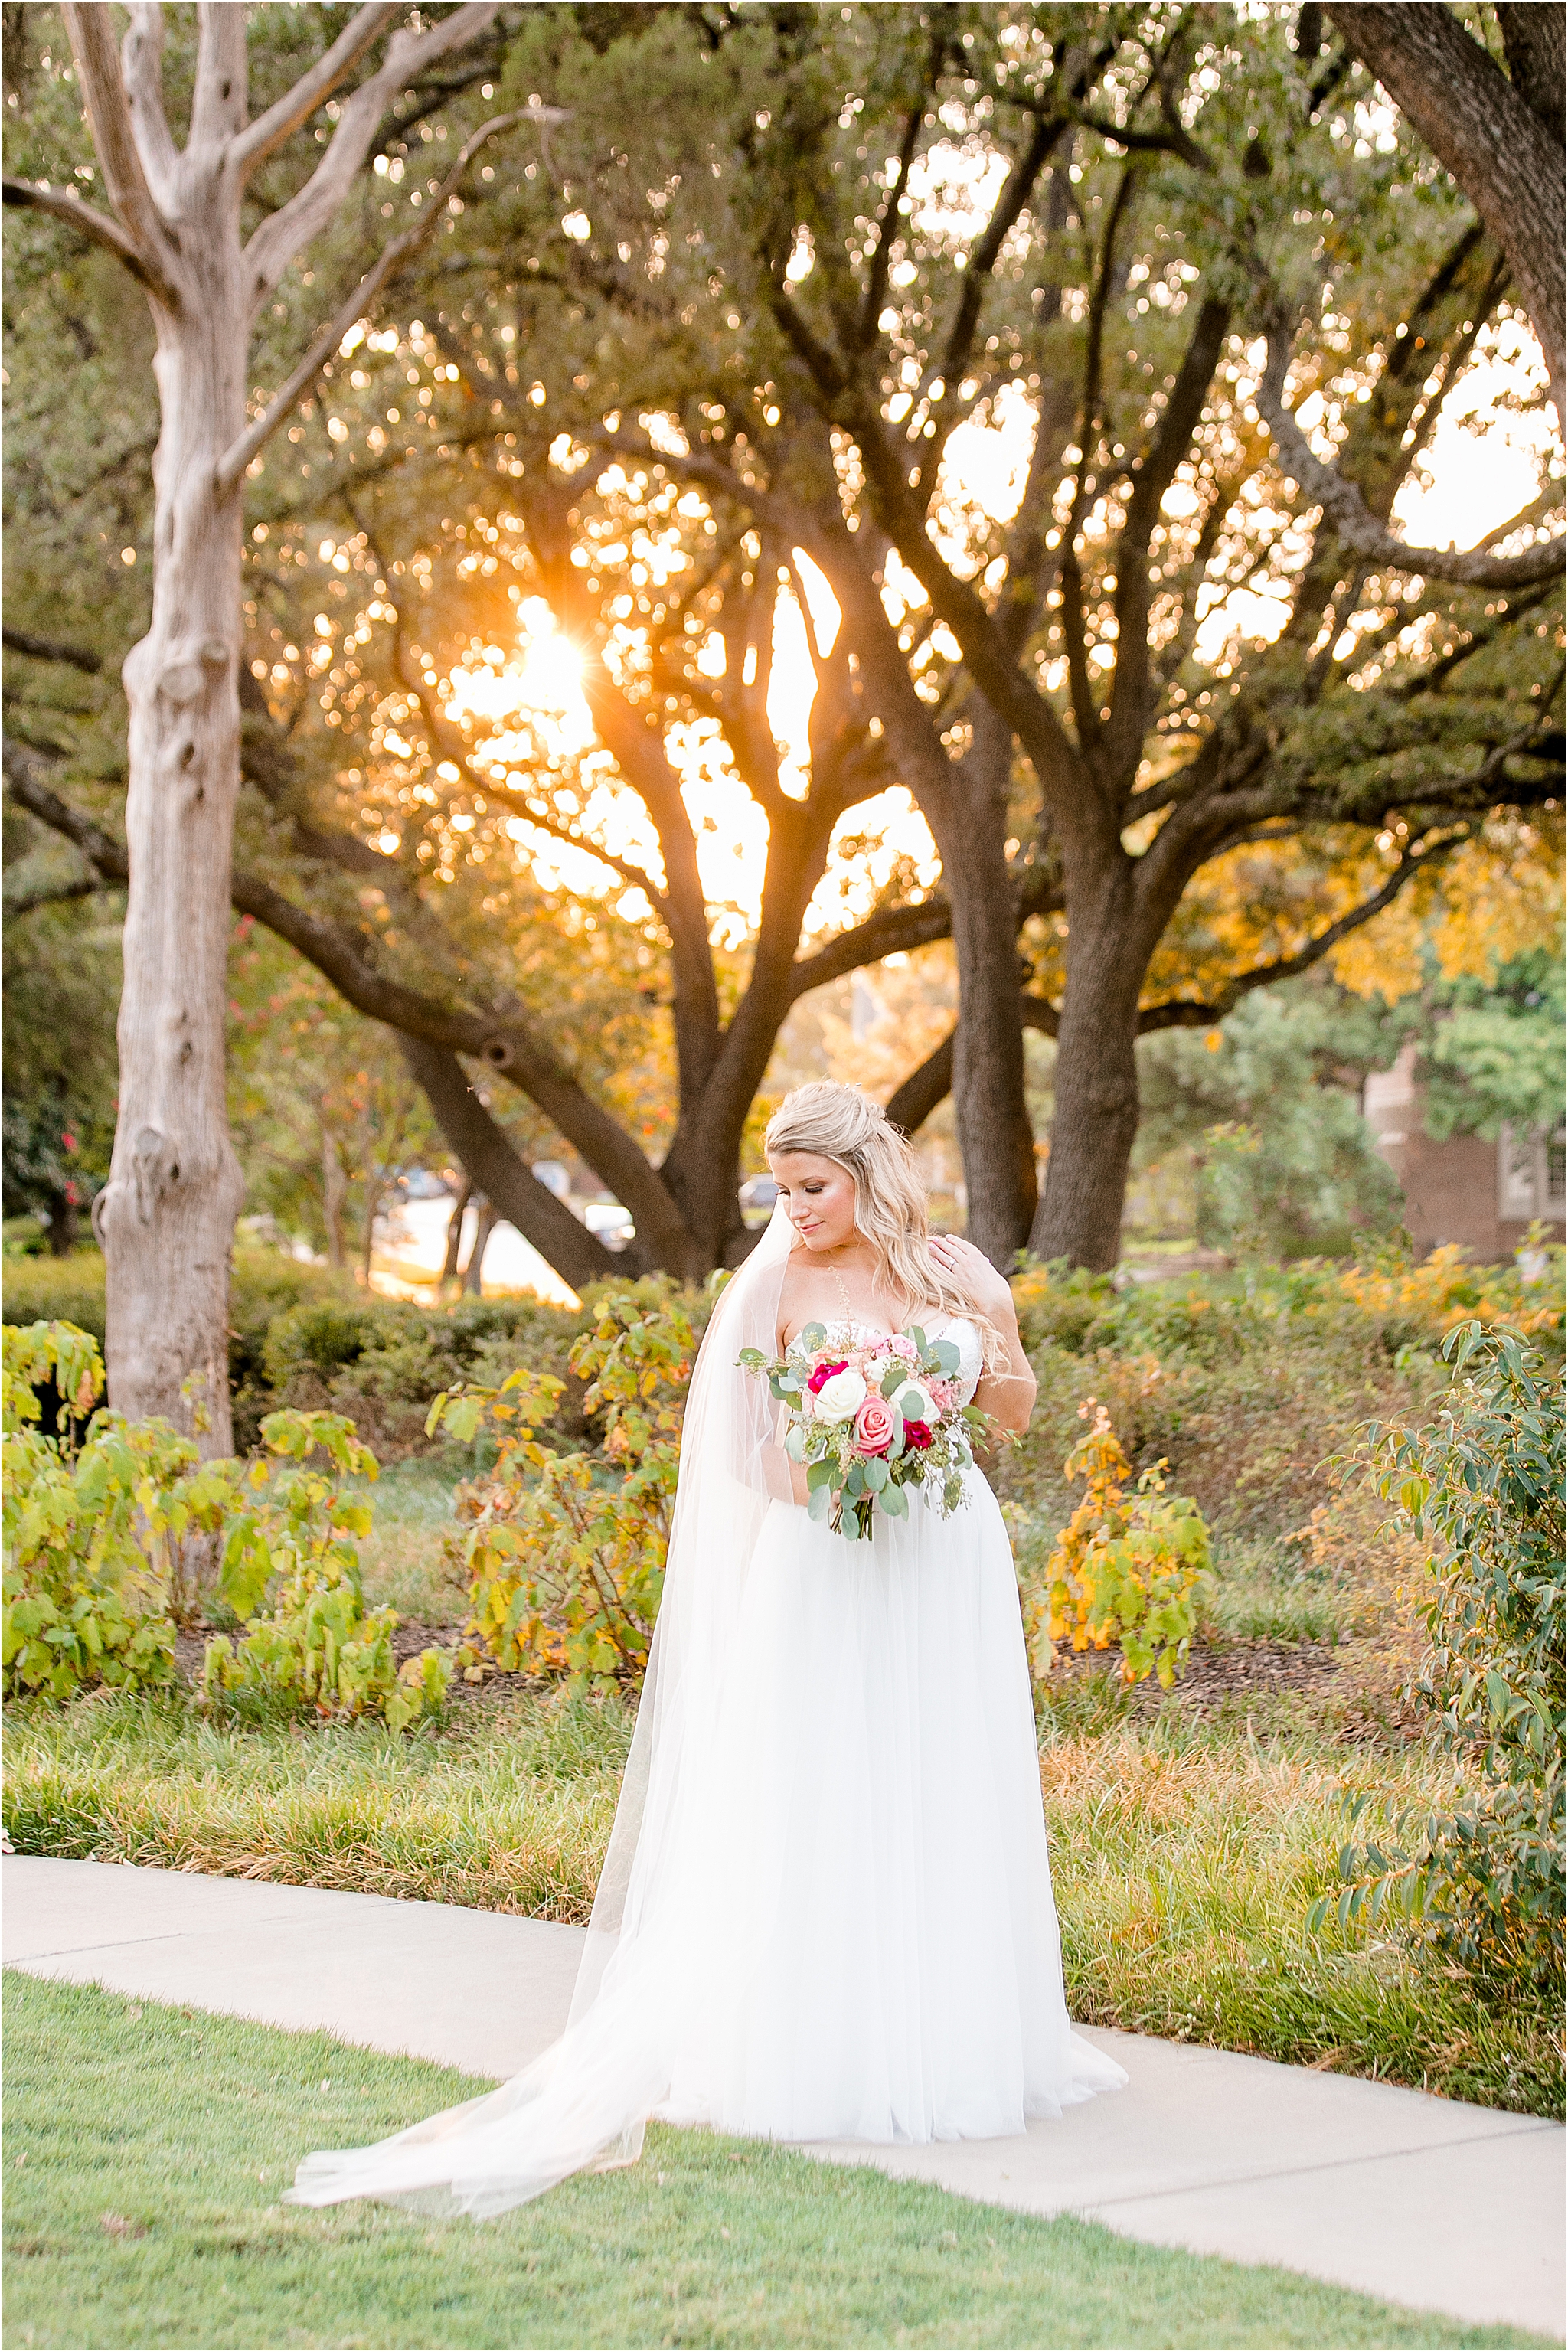 Bridal Photography in Dallas TX by DFW Wedding Photographer Jillian Hogan 